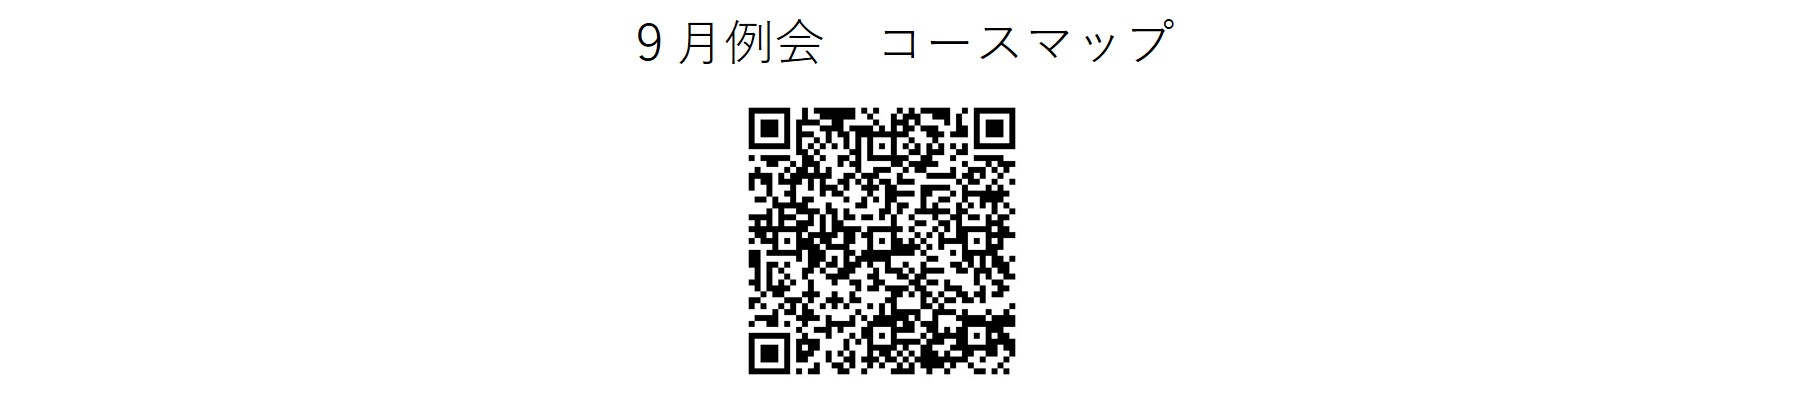 かしわんぽ用9月例会コースマップ.jpg